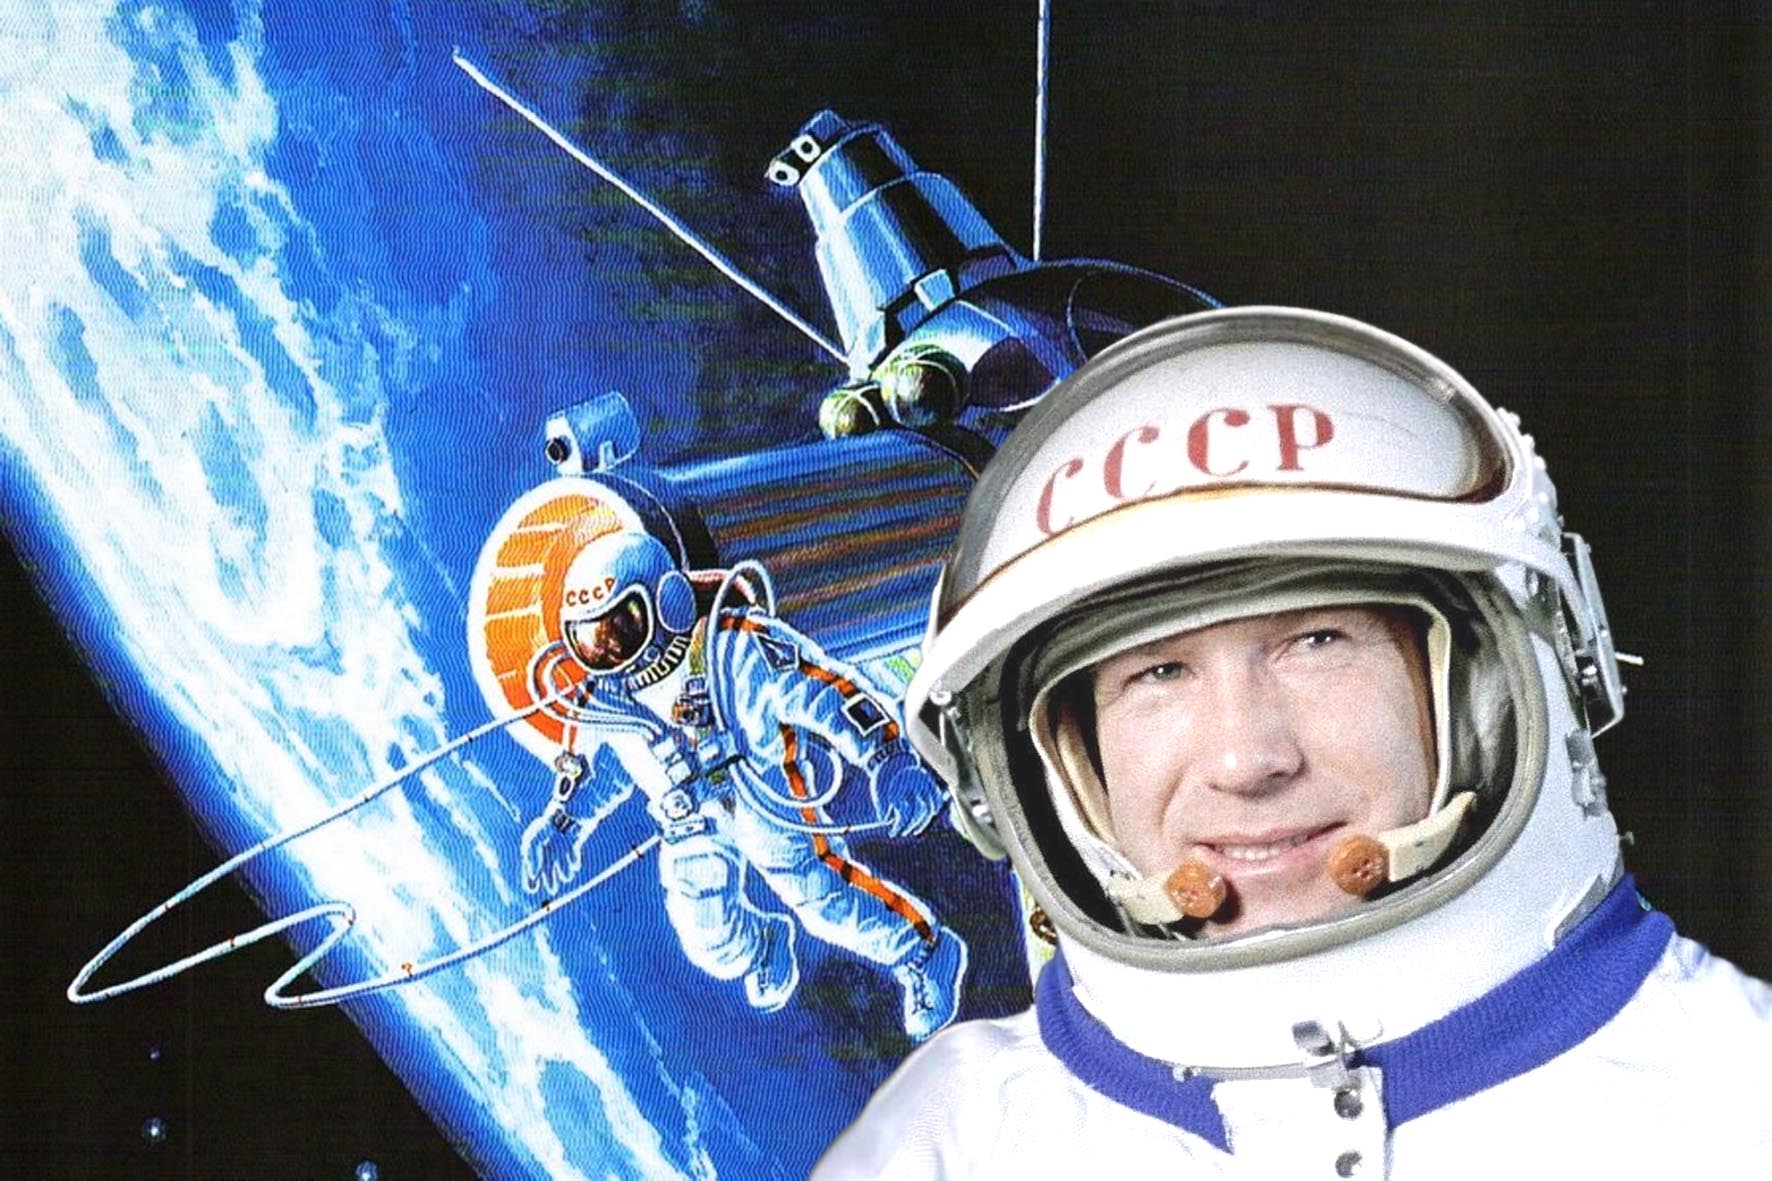 Первый вышел в открытый космос год. Выход в открытый космос Алексея Архиповича Леонова.